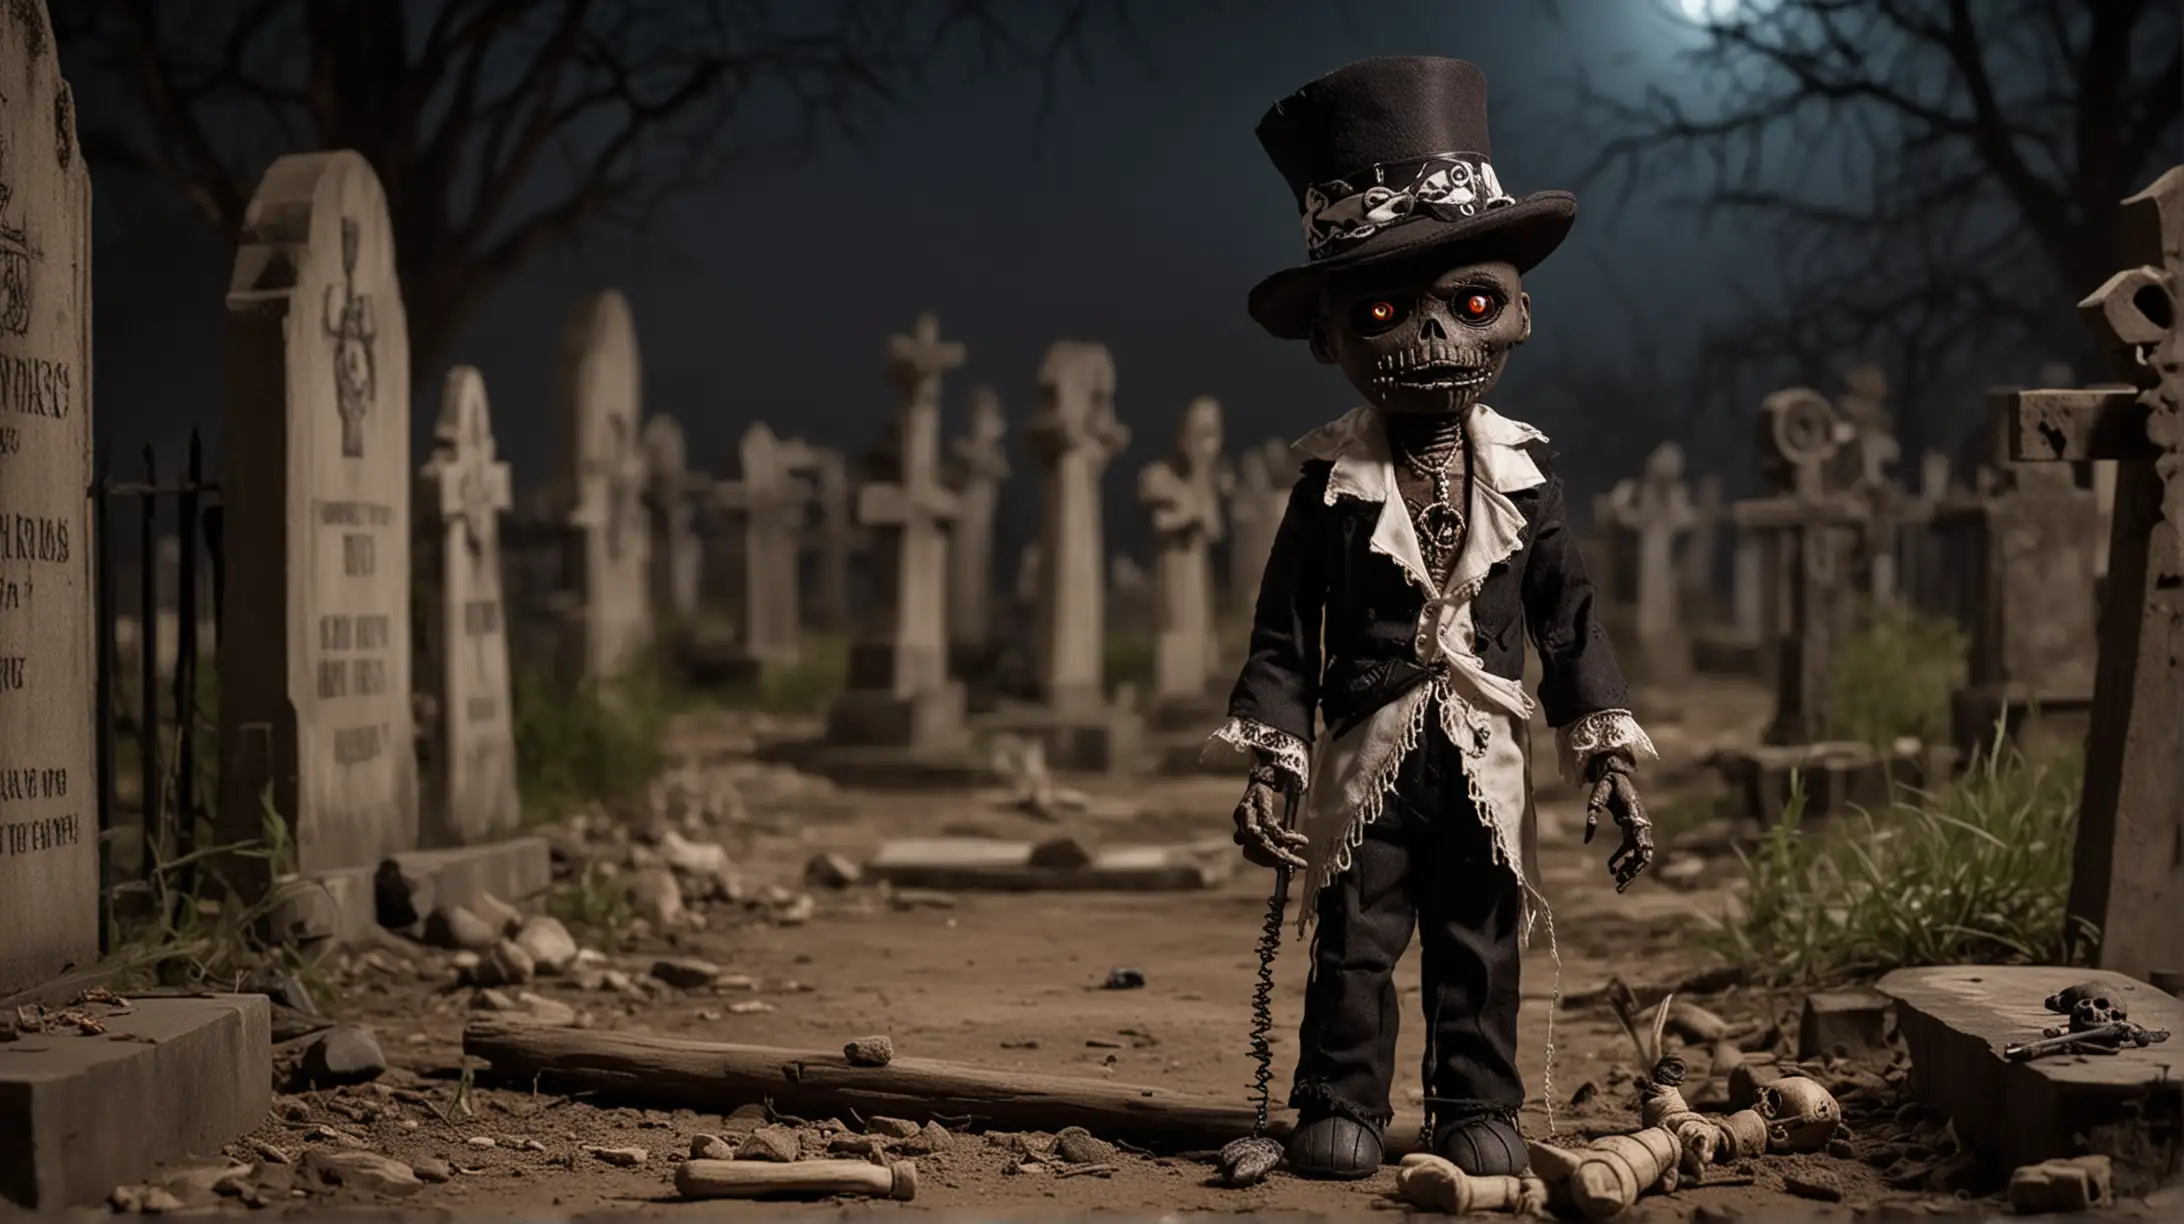 Baron Samedi Voodoo Doll in Night Cemetery Scene